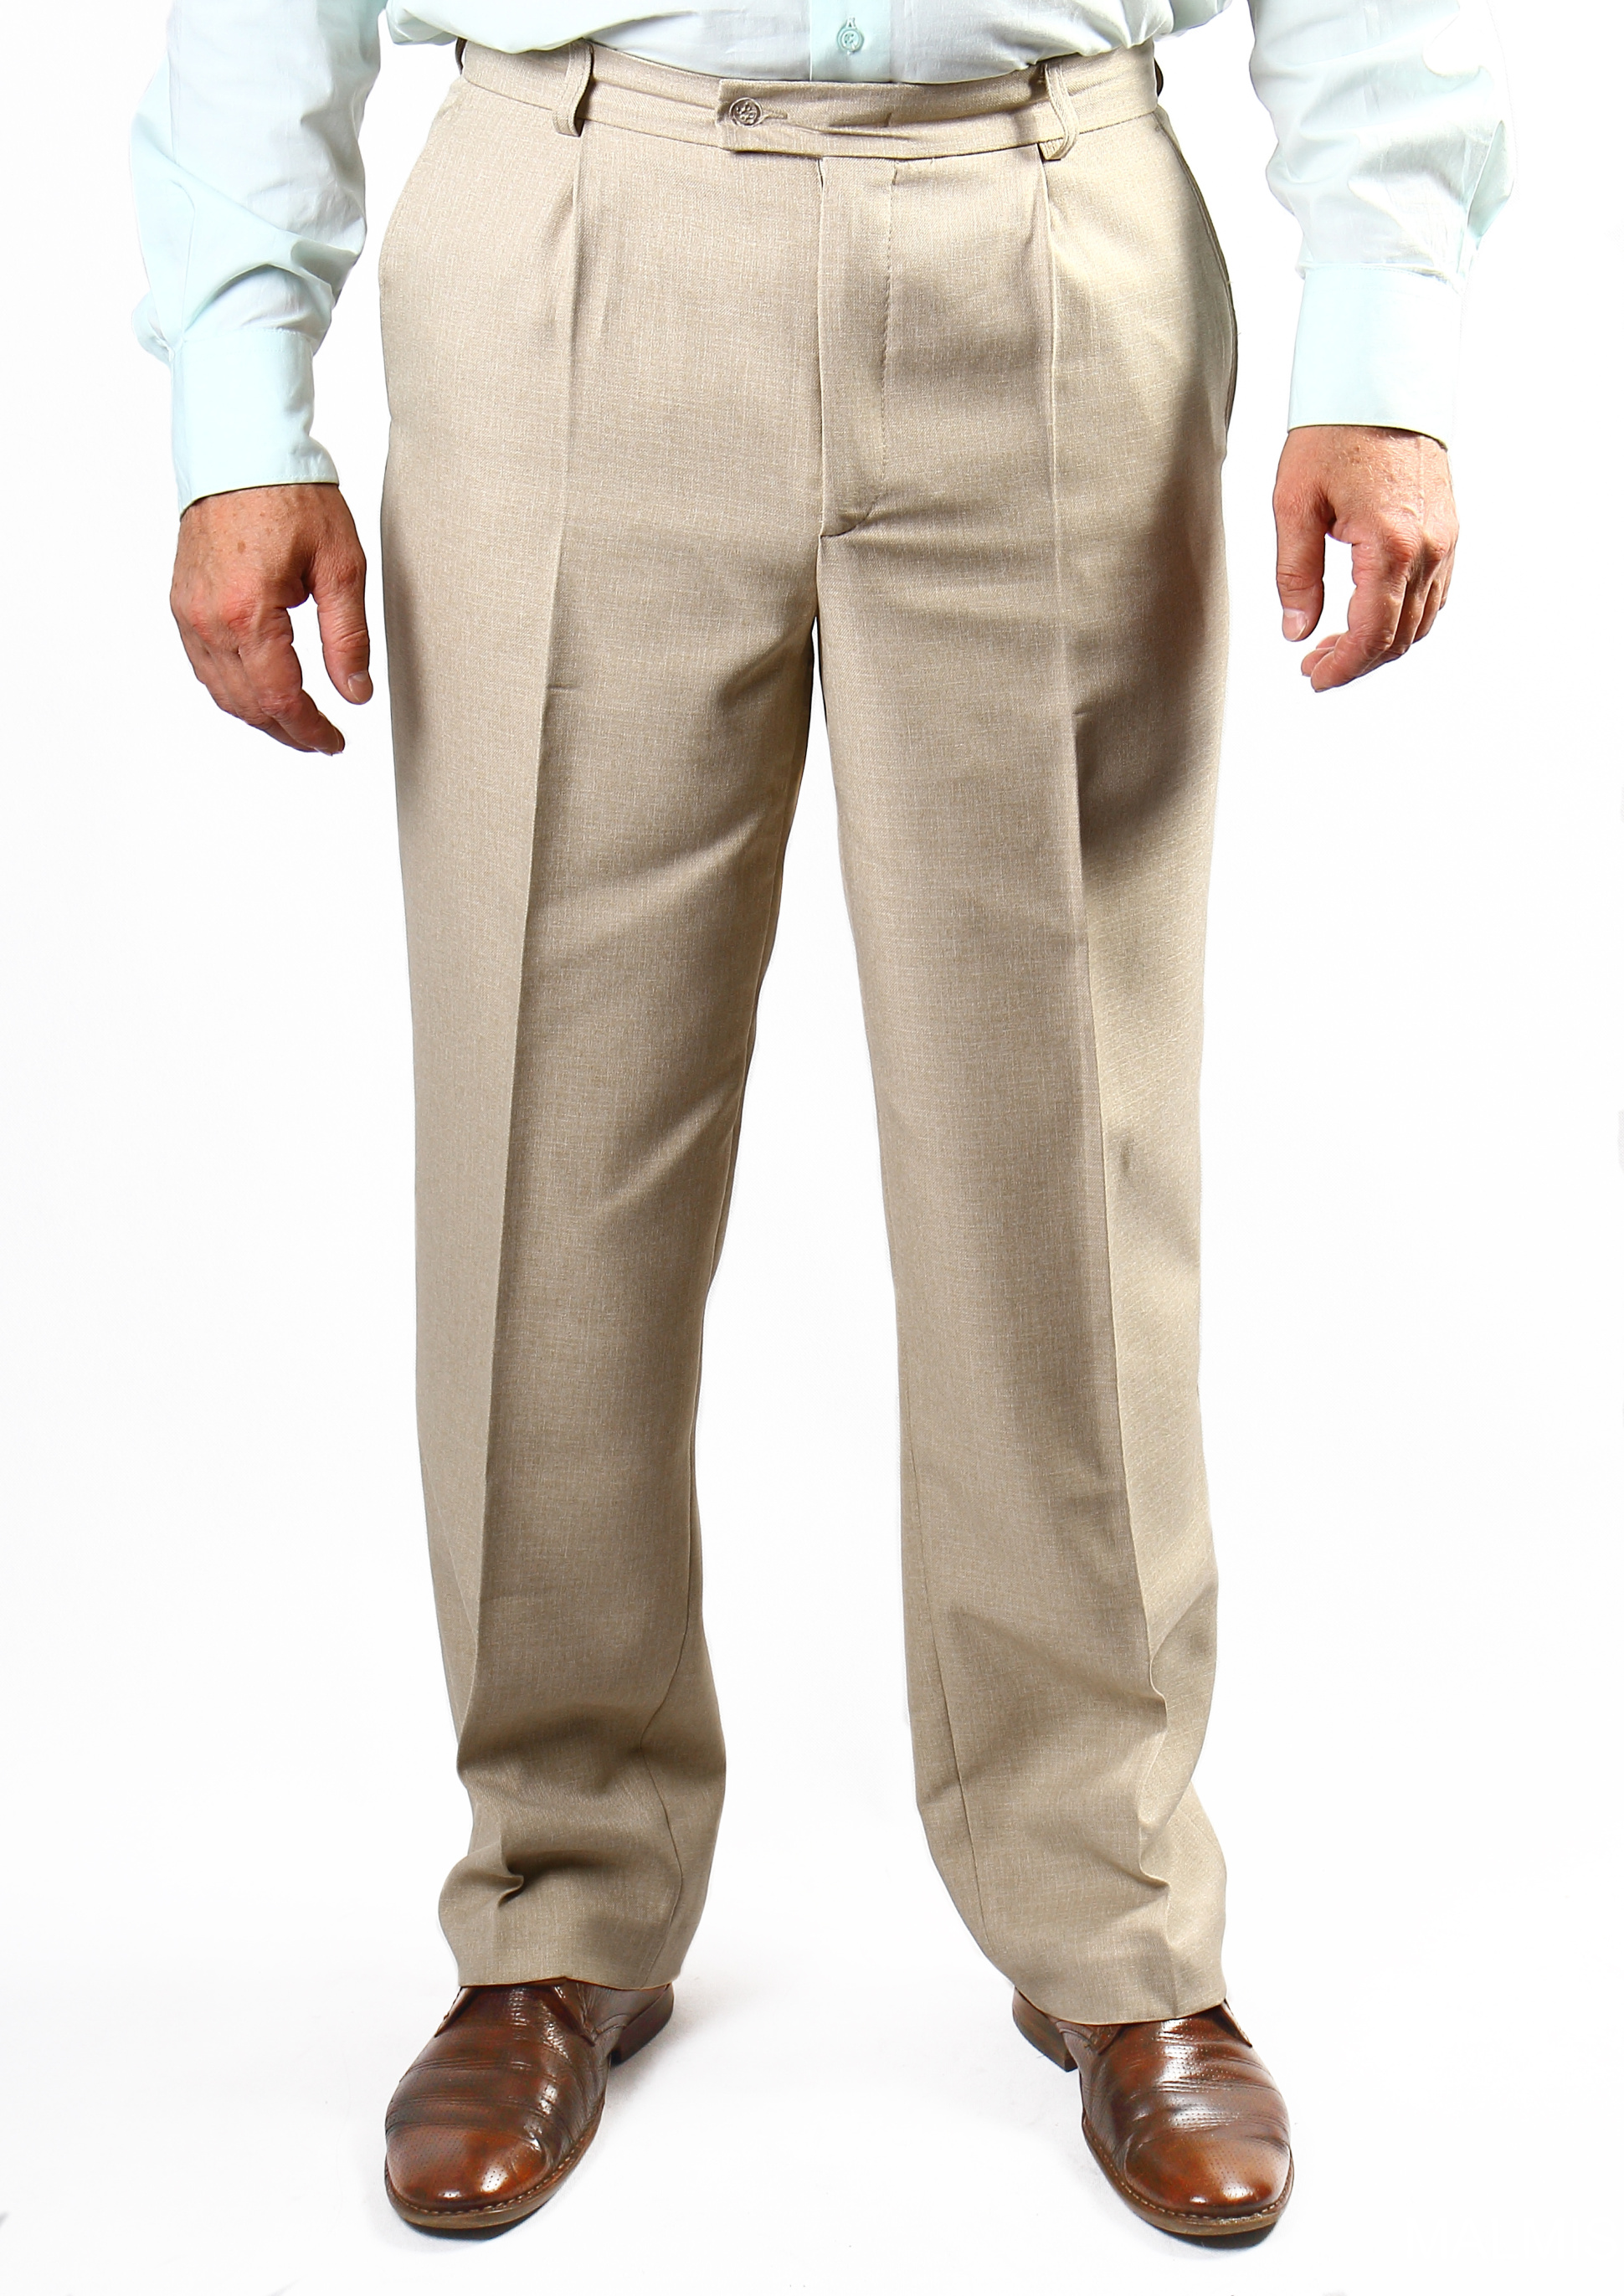 Купить штаны мужские большого размера. Benetton мужские брюки Cotton Linen. Брюки мужские классические. Летние классические брюки для мужчин. Мужчина в классических брюках.